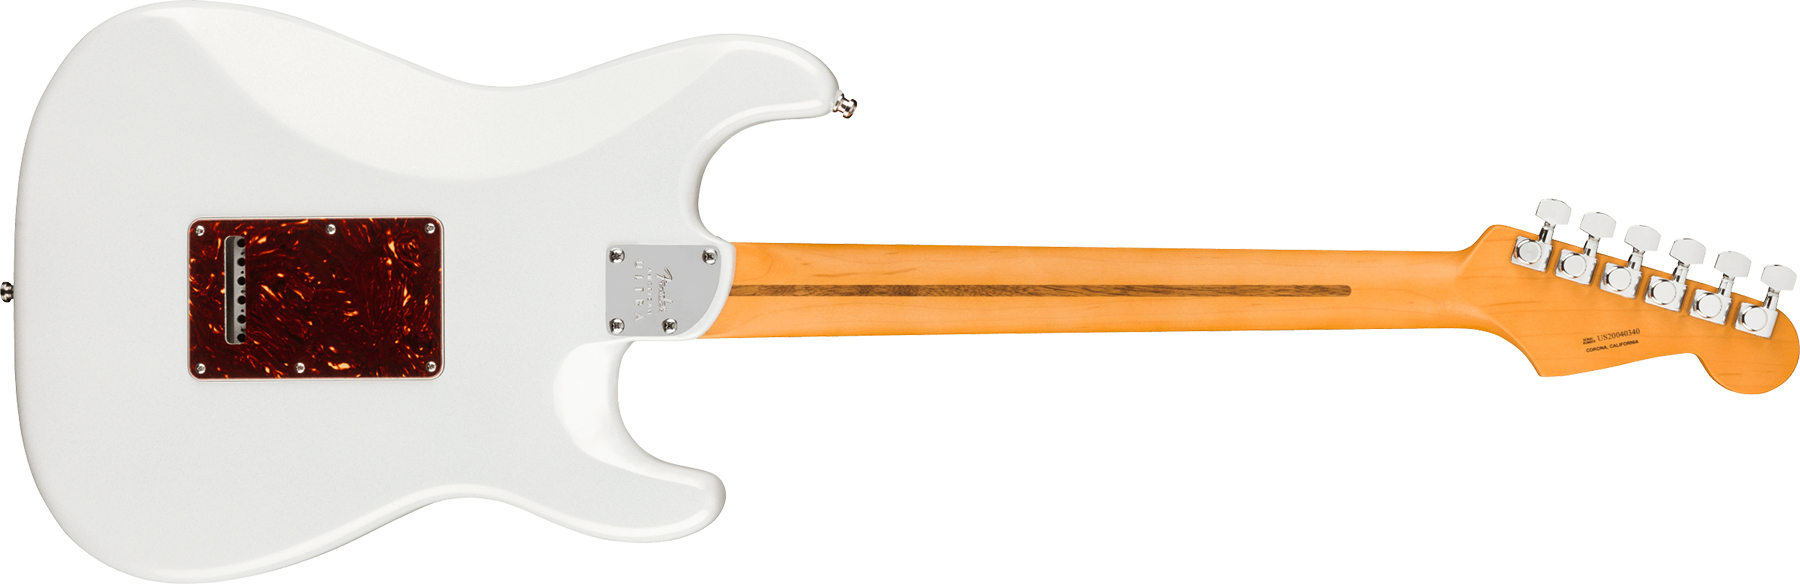 Fender Strat American Ultra Lh Gaucher Usa Rw +etui - Arctic Pearl - Linkshandige elektrische gitaar - Variation 1